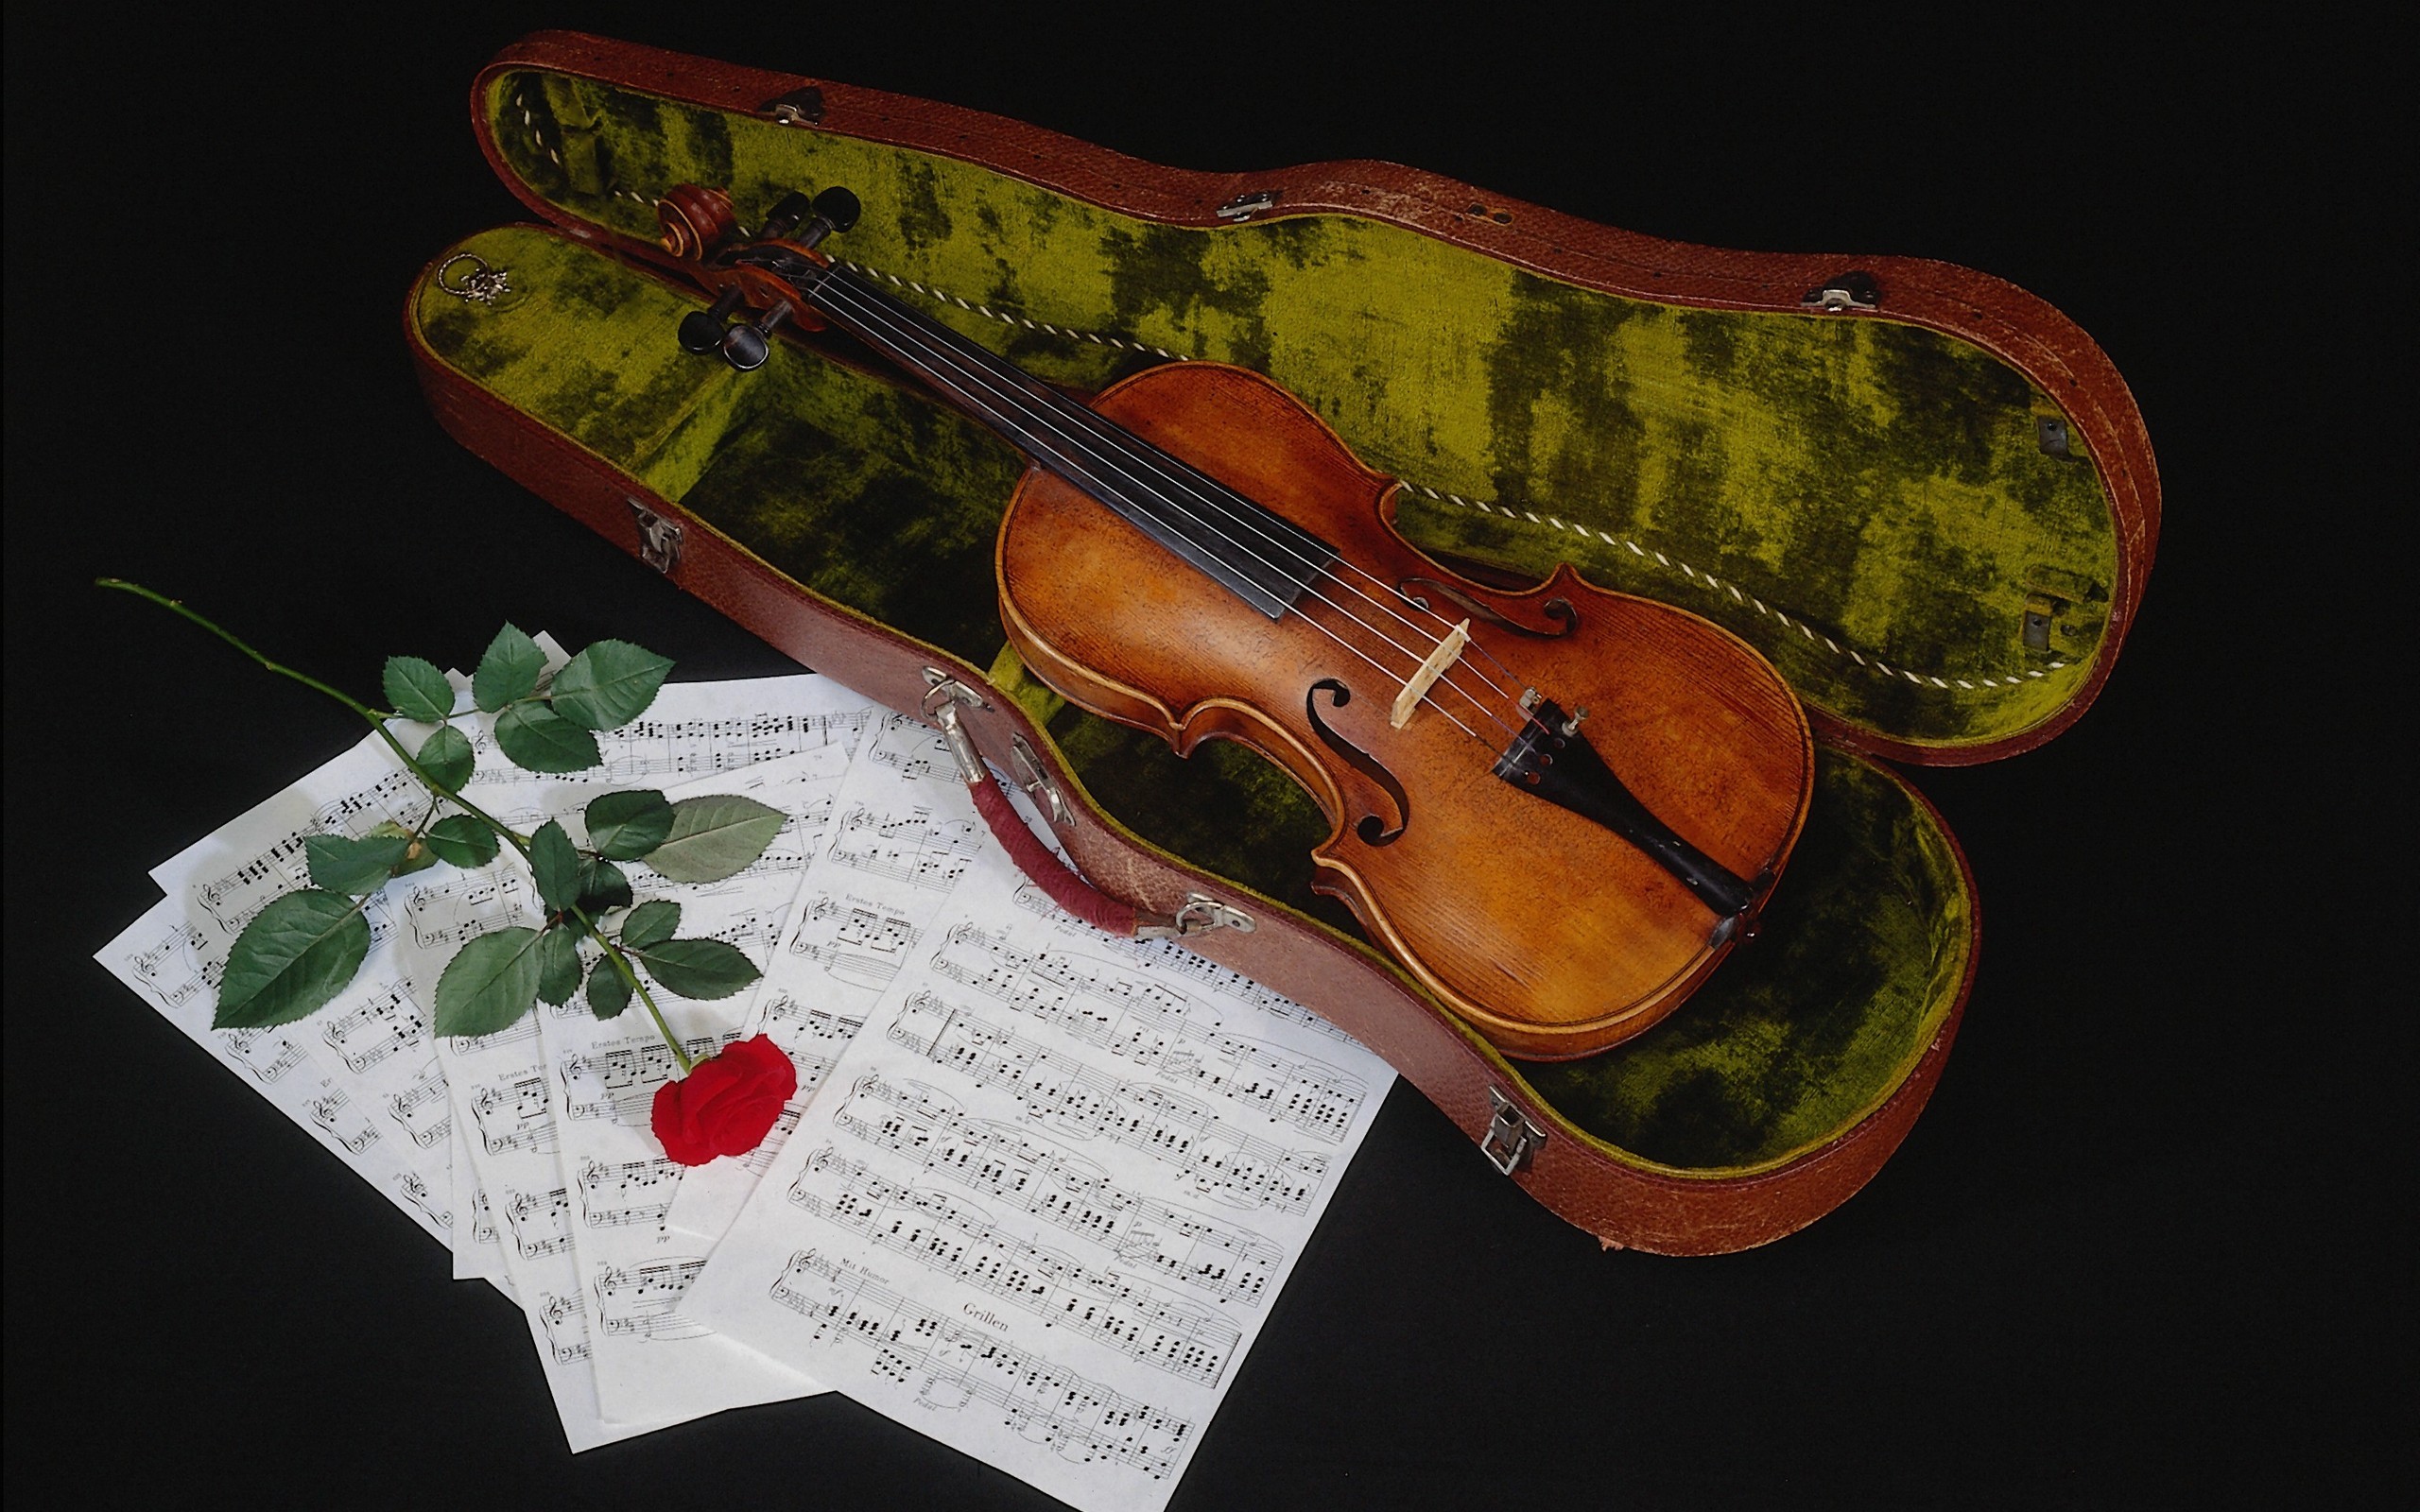 Instrument Red Rose Sheet Music Still Life Violin 2560x1600